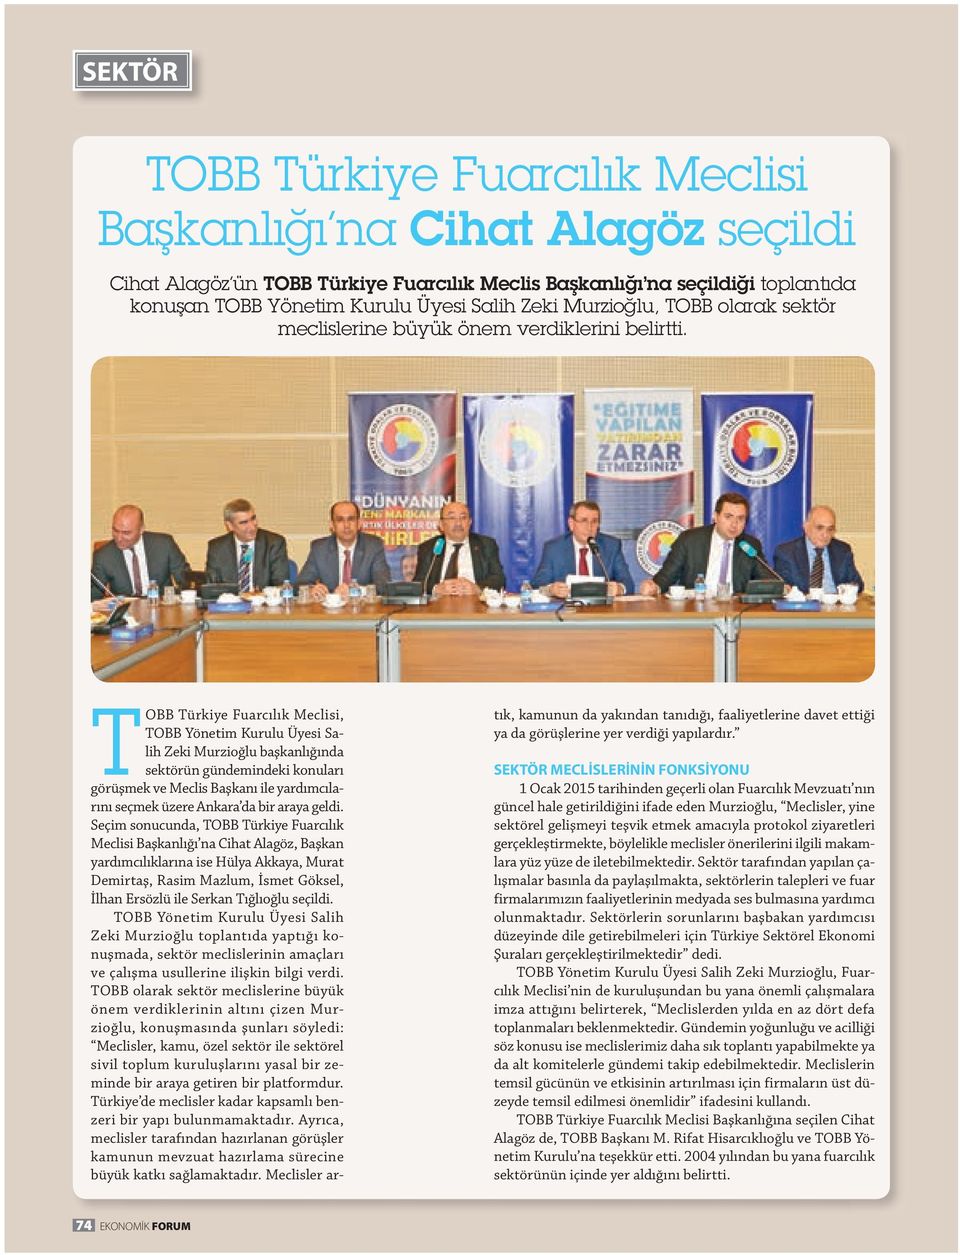 OBB ürkiye Fuarcılık Meclisi, OBB Yönetim Kurulu Üyesi Salih Zeki Murzioğlu başkanlığında sektörün gündemindeki konuları görüşmek ve Meclis Başkanı ile yardımcılarını seçmek üzere Ankara da bir araya